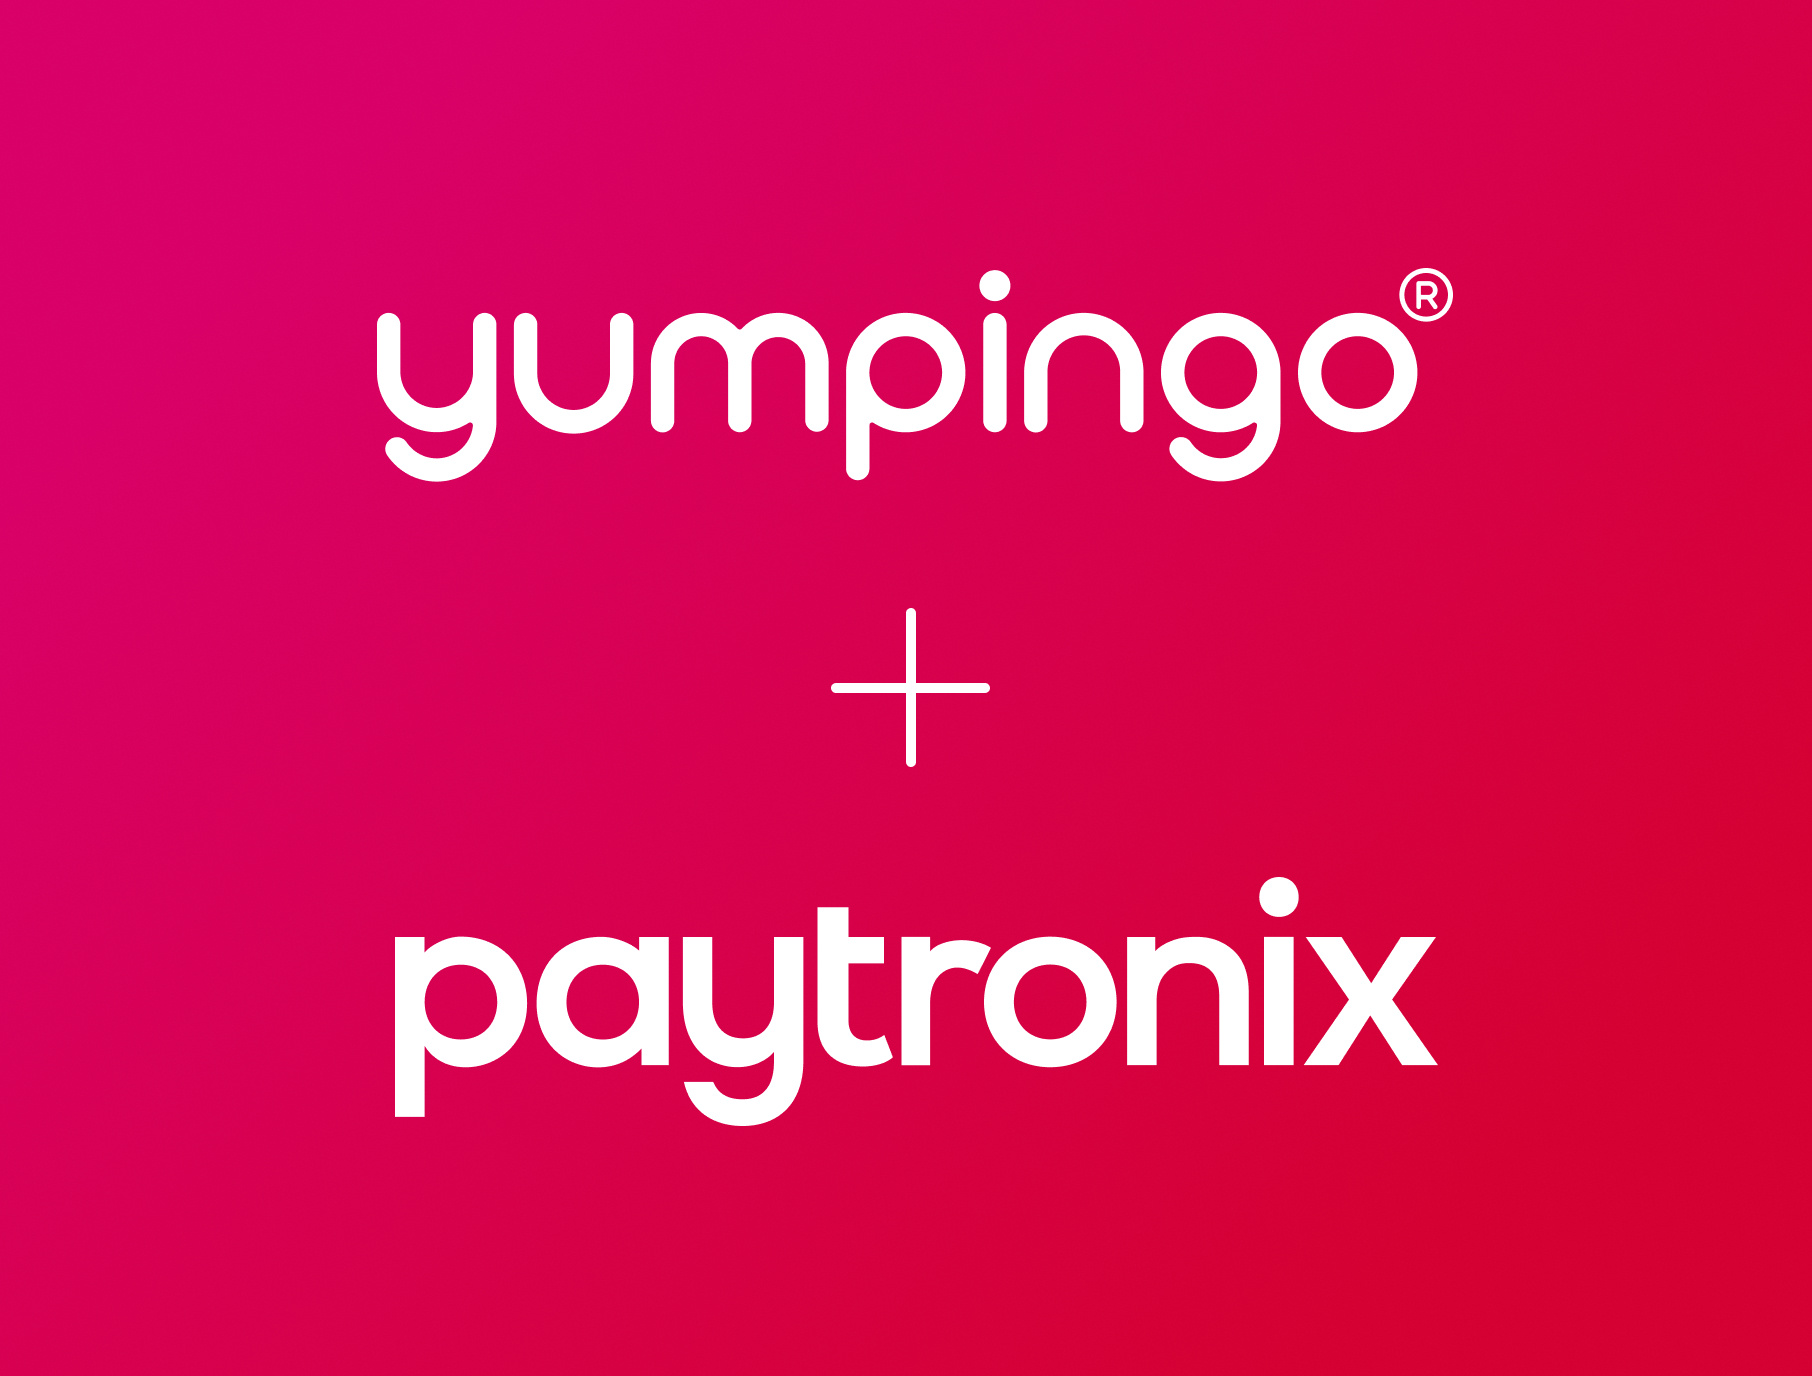 paytronix and yumpingo